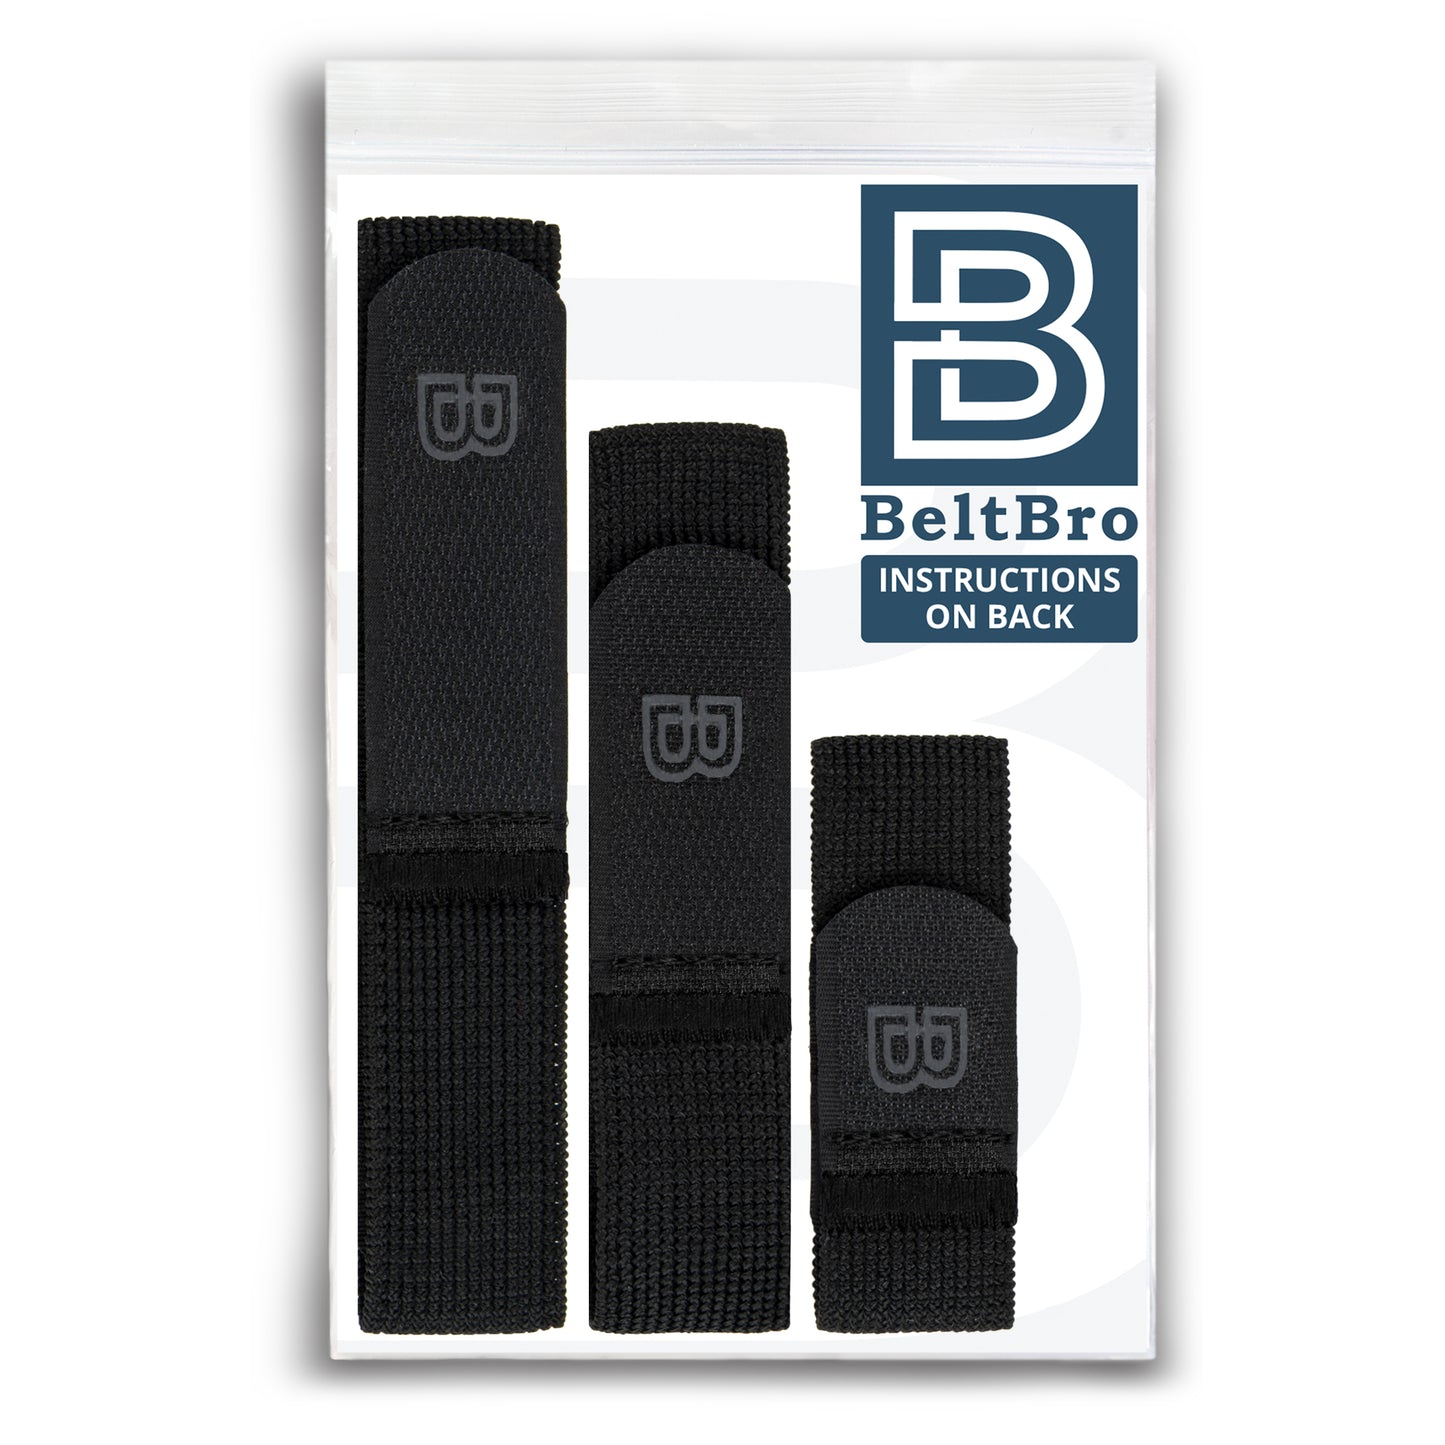 2 BeltBro Originals (Buy 1 Get 1 FREE!)